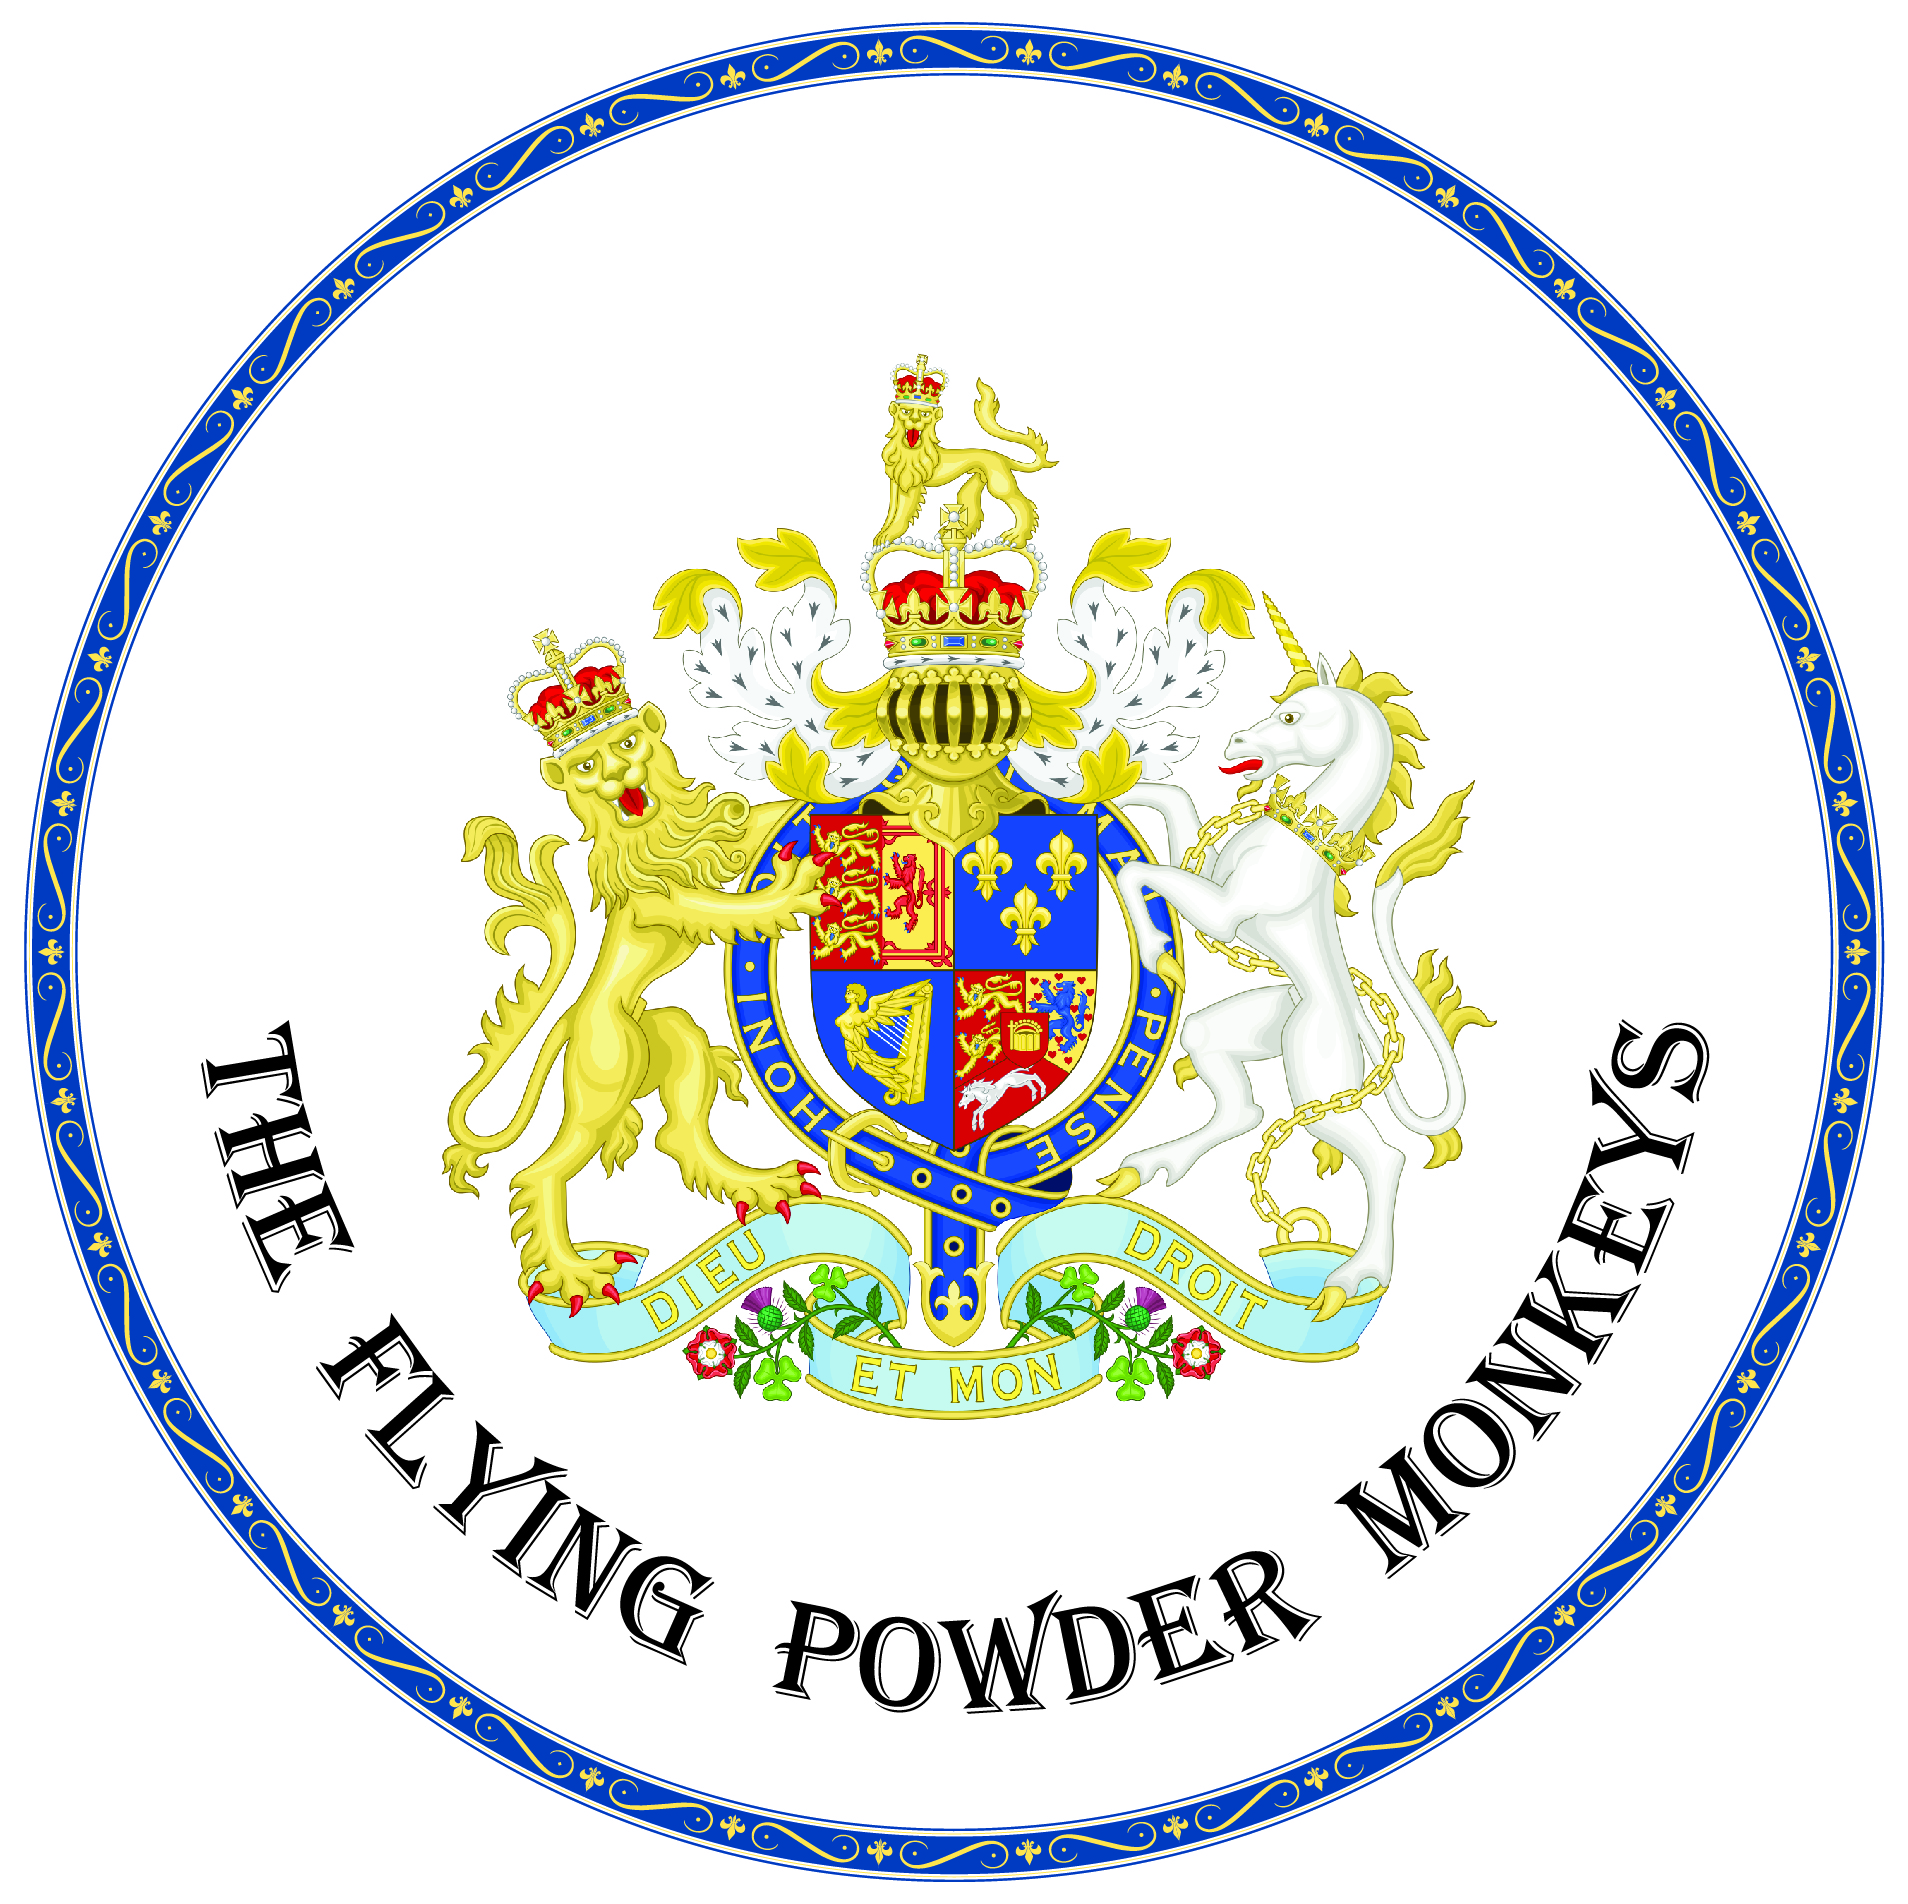 Flying Powder Monkeys logo